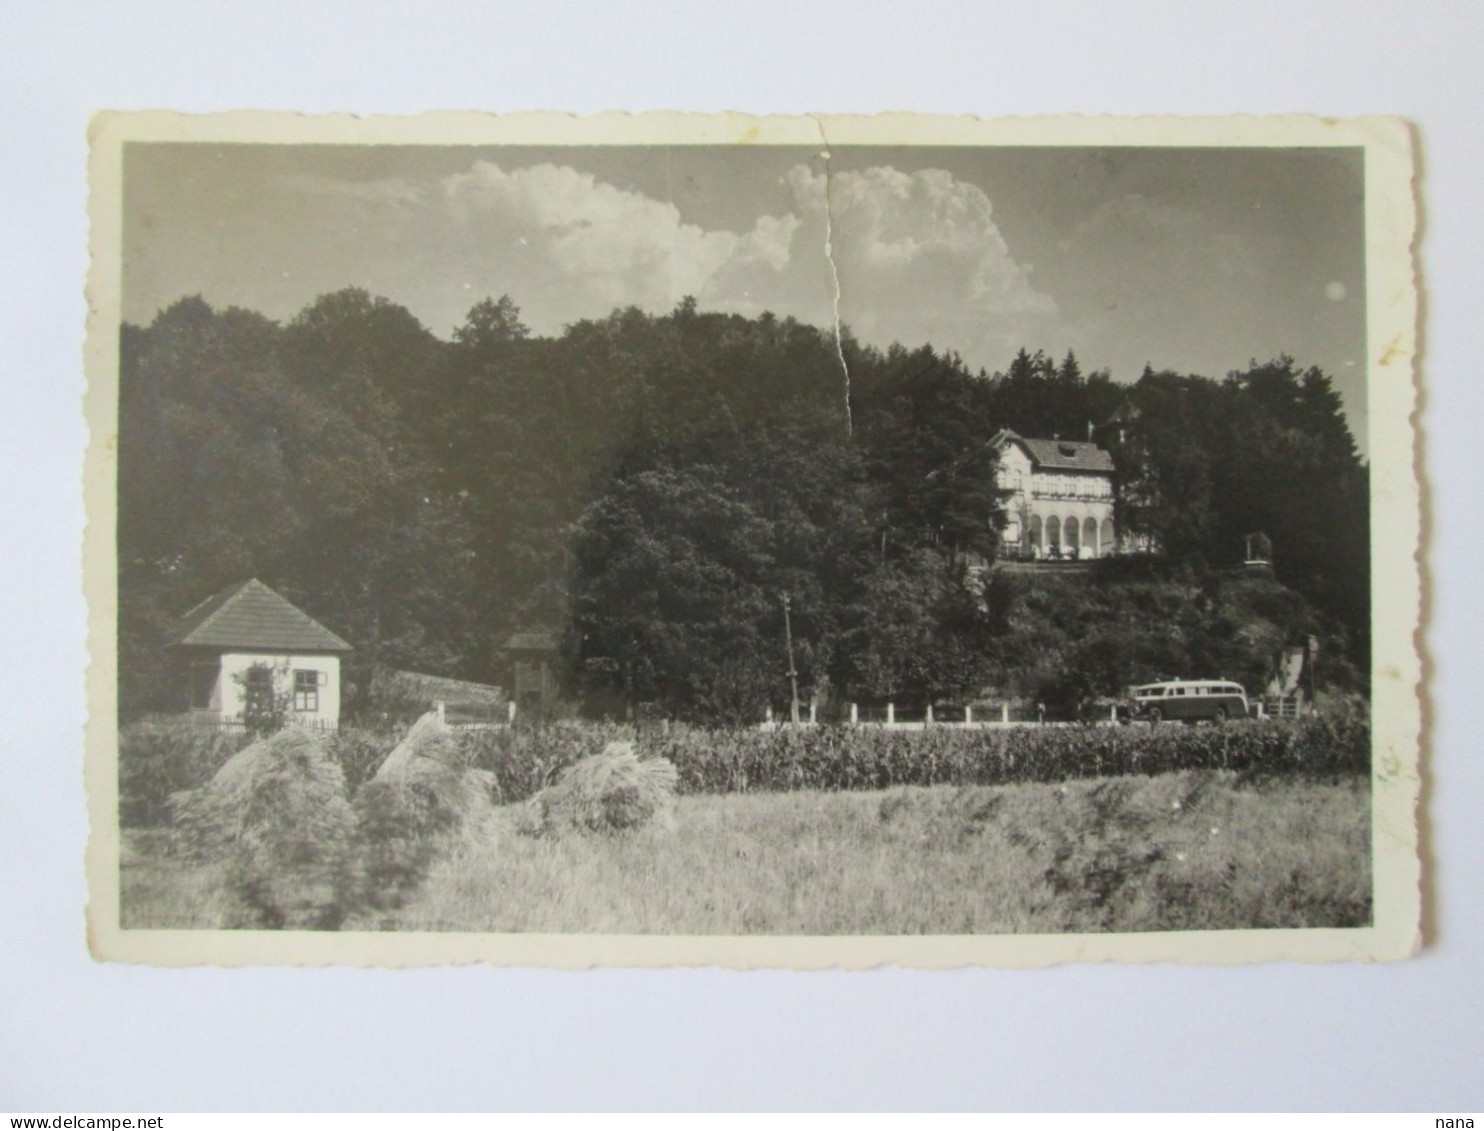 Romania-Ciucea(Cluj):Le Chateau D'Octavian Goga Carte Photo Vers 1940/Octavian Goga Castle Photo Postcard 1940s - Roemenië